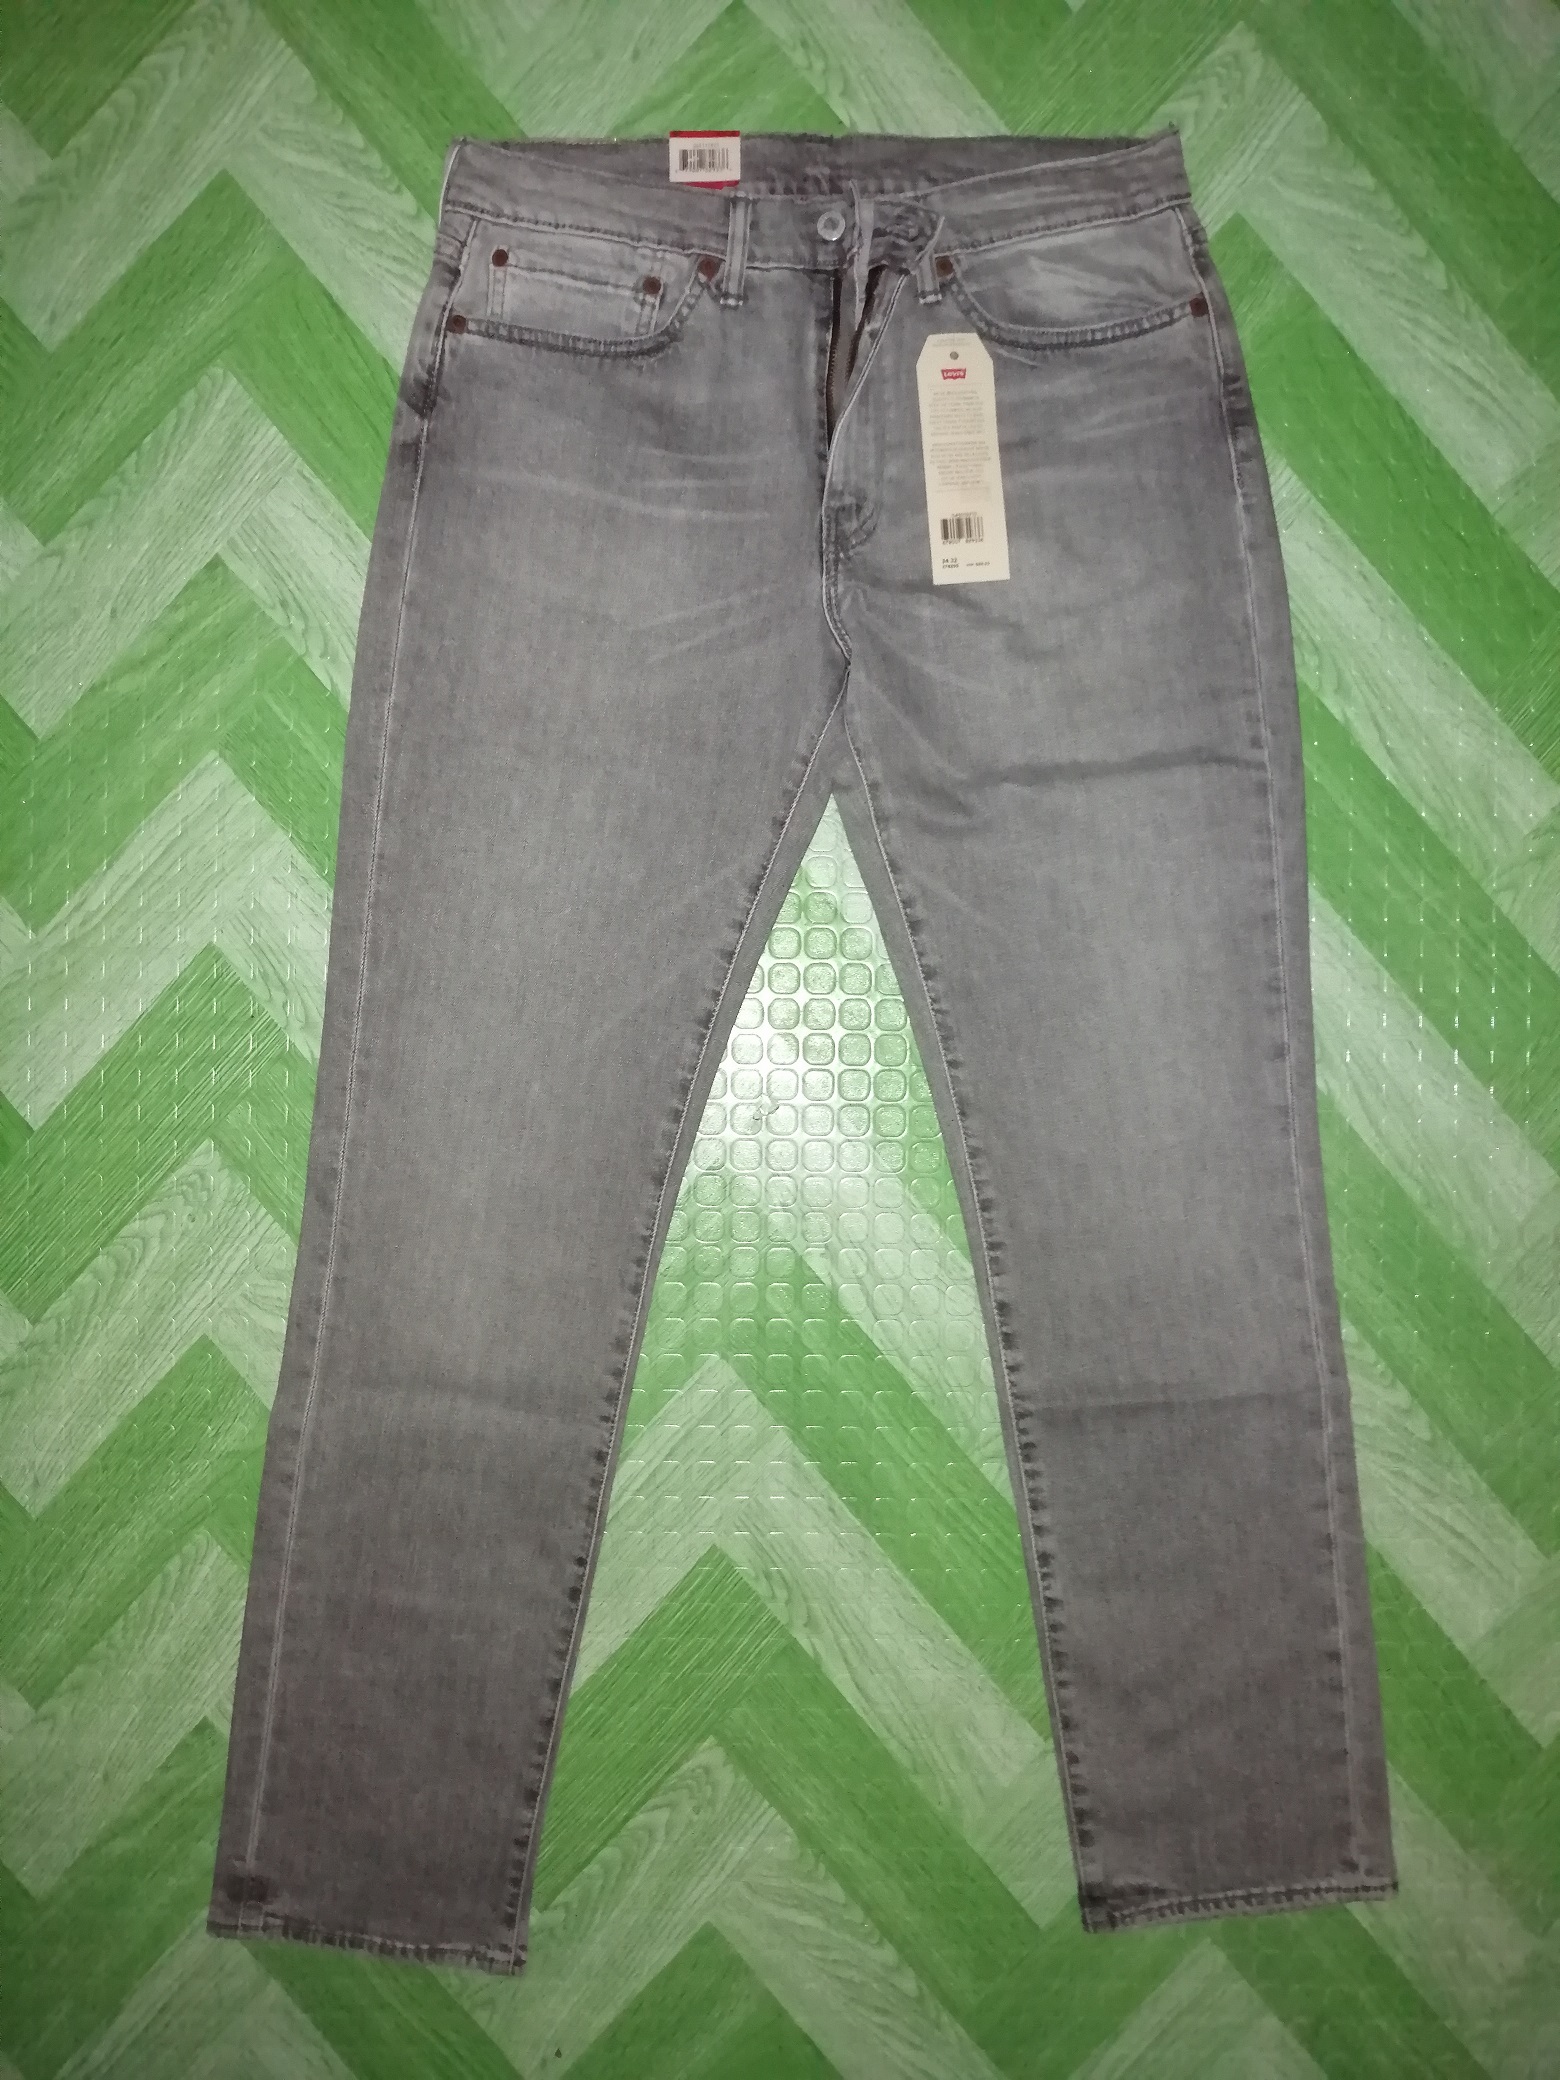 Authentic Levi's 511 Slim Fit Jeans (size 34